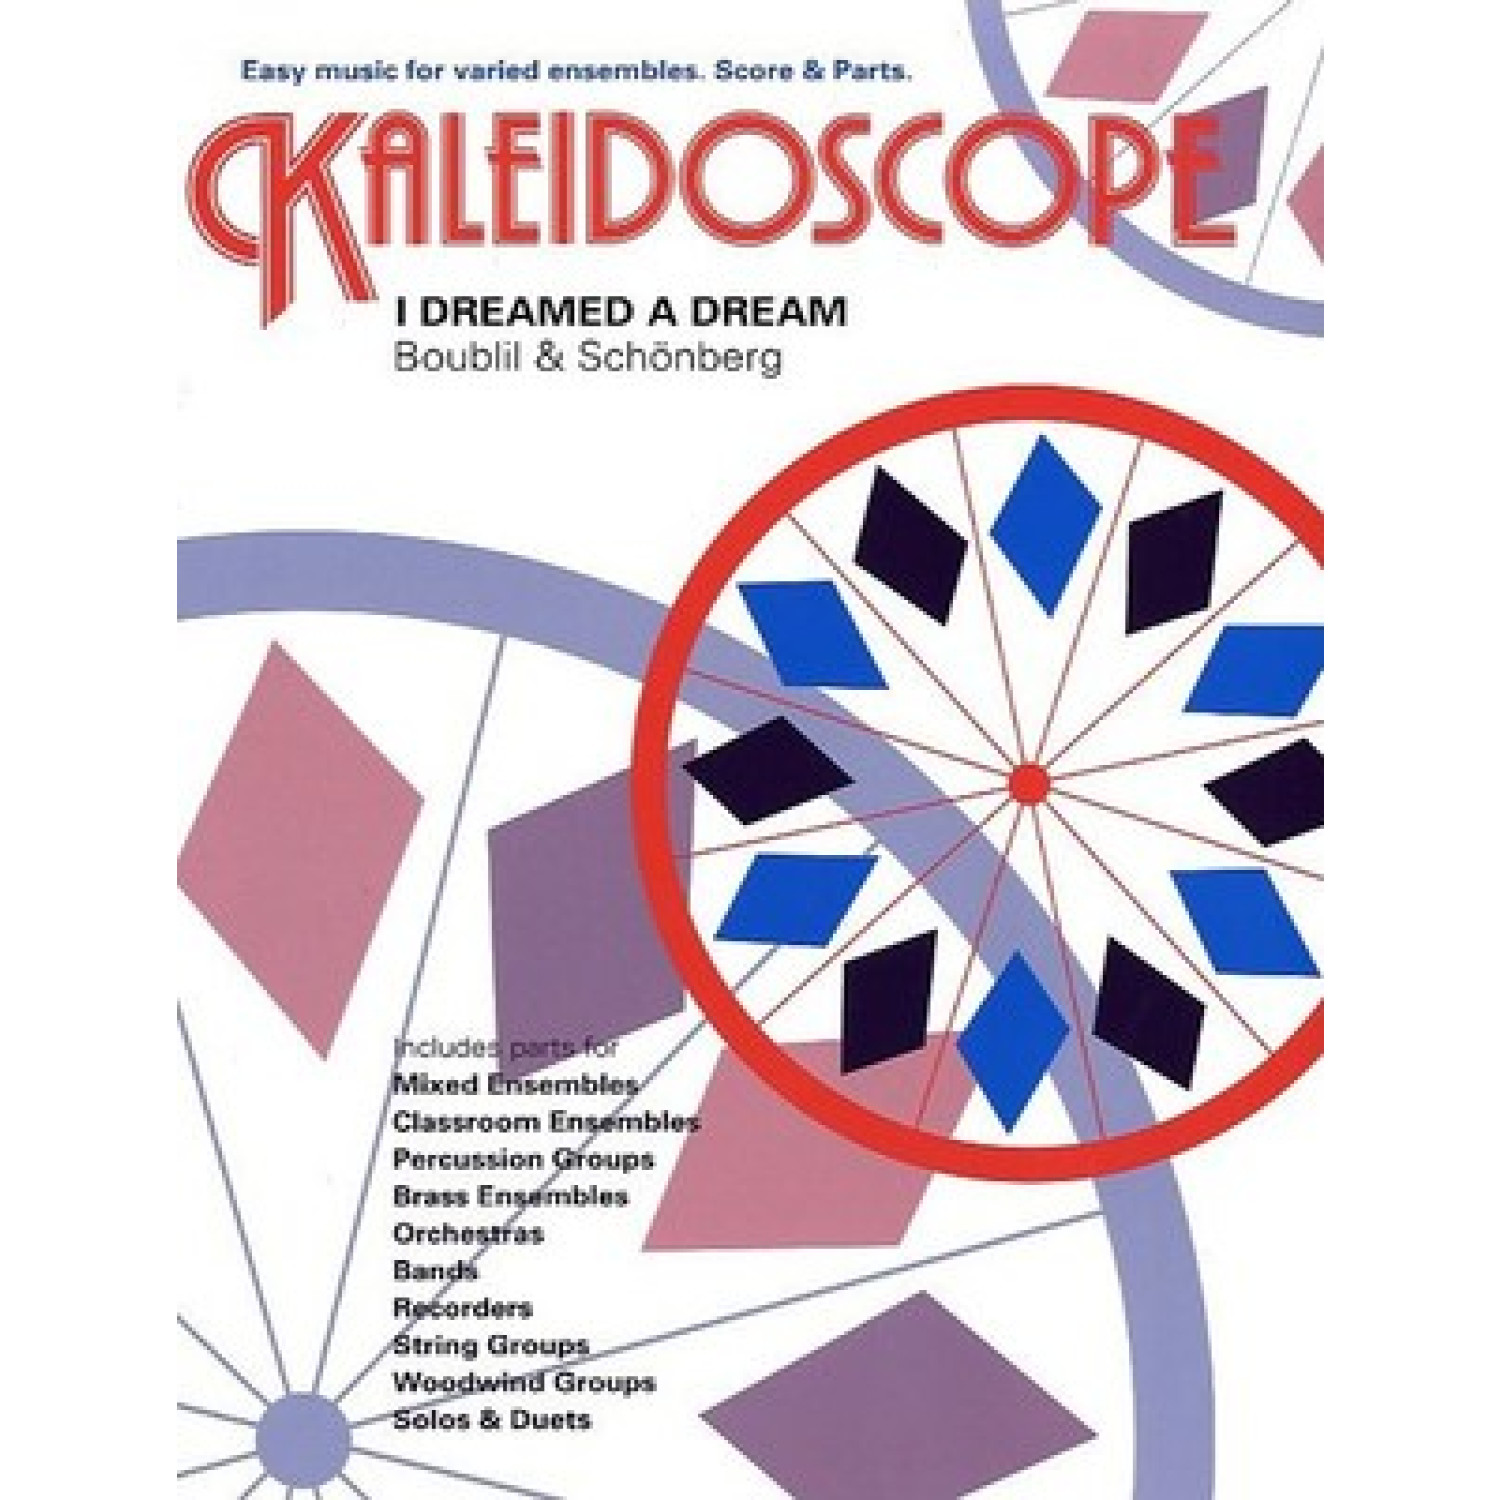 kaleidoscope meaning in dream